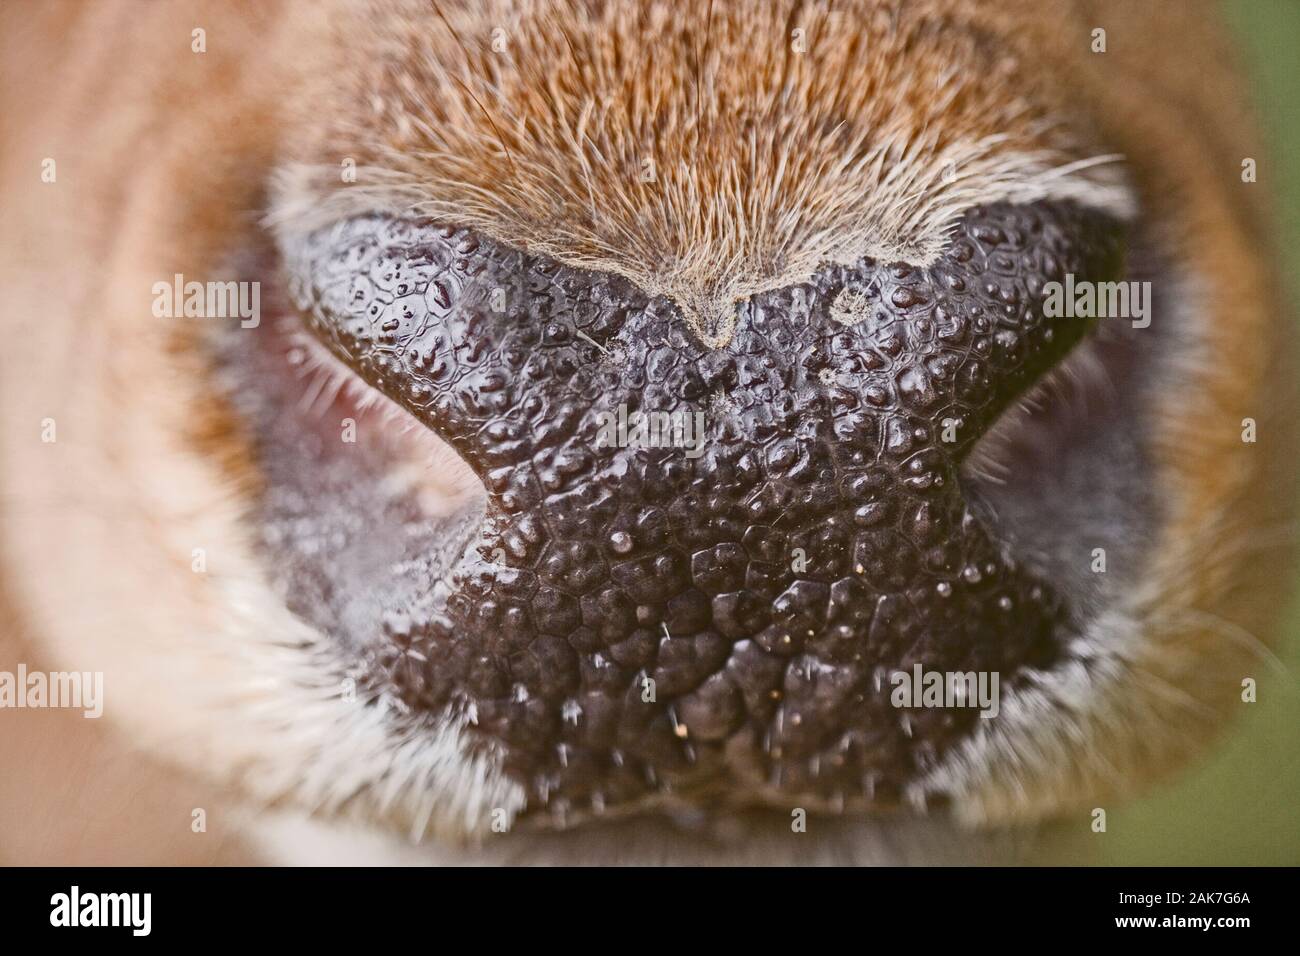 RED DEER (Cervus elaphus) Nase und nasenlöcher von einem Hirsch, oder männlich. Stockfoto